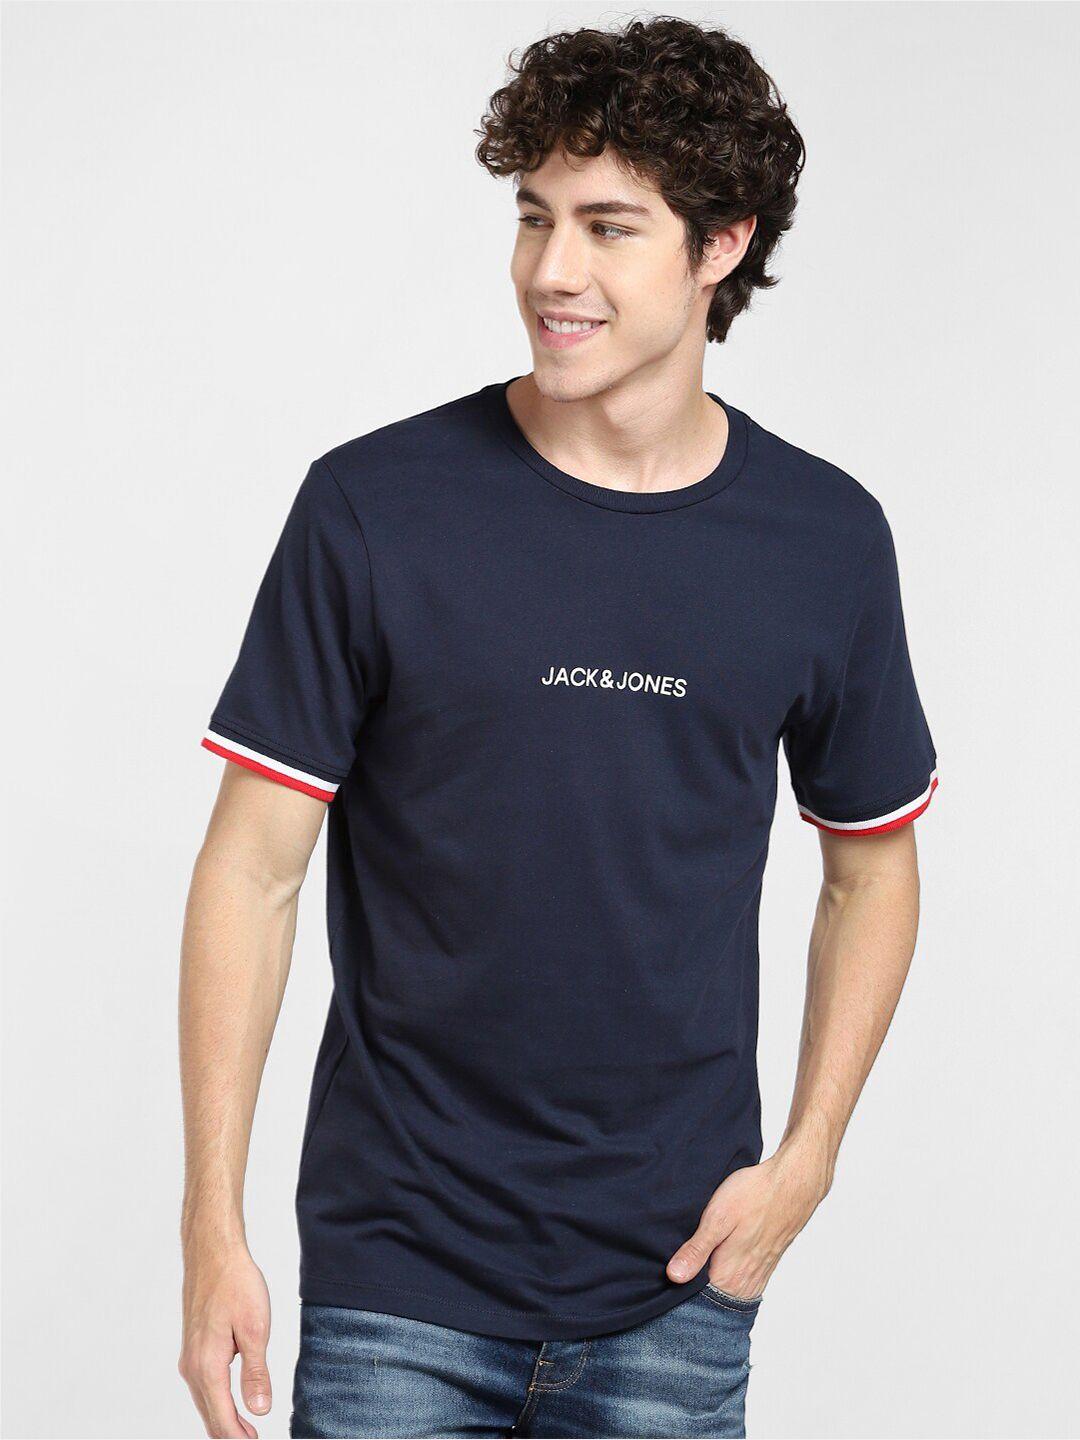 jack & jones men blue & white cotton slim fit t-shirt